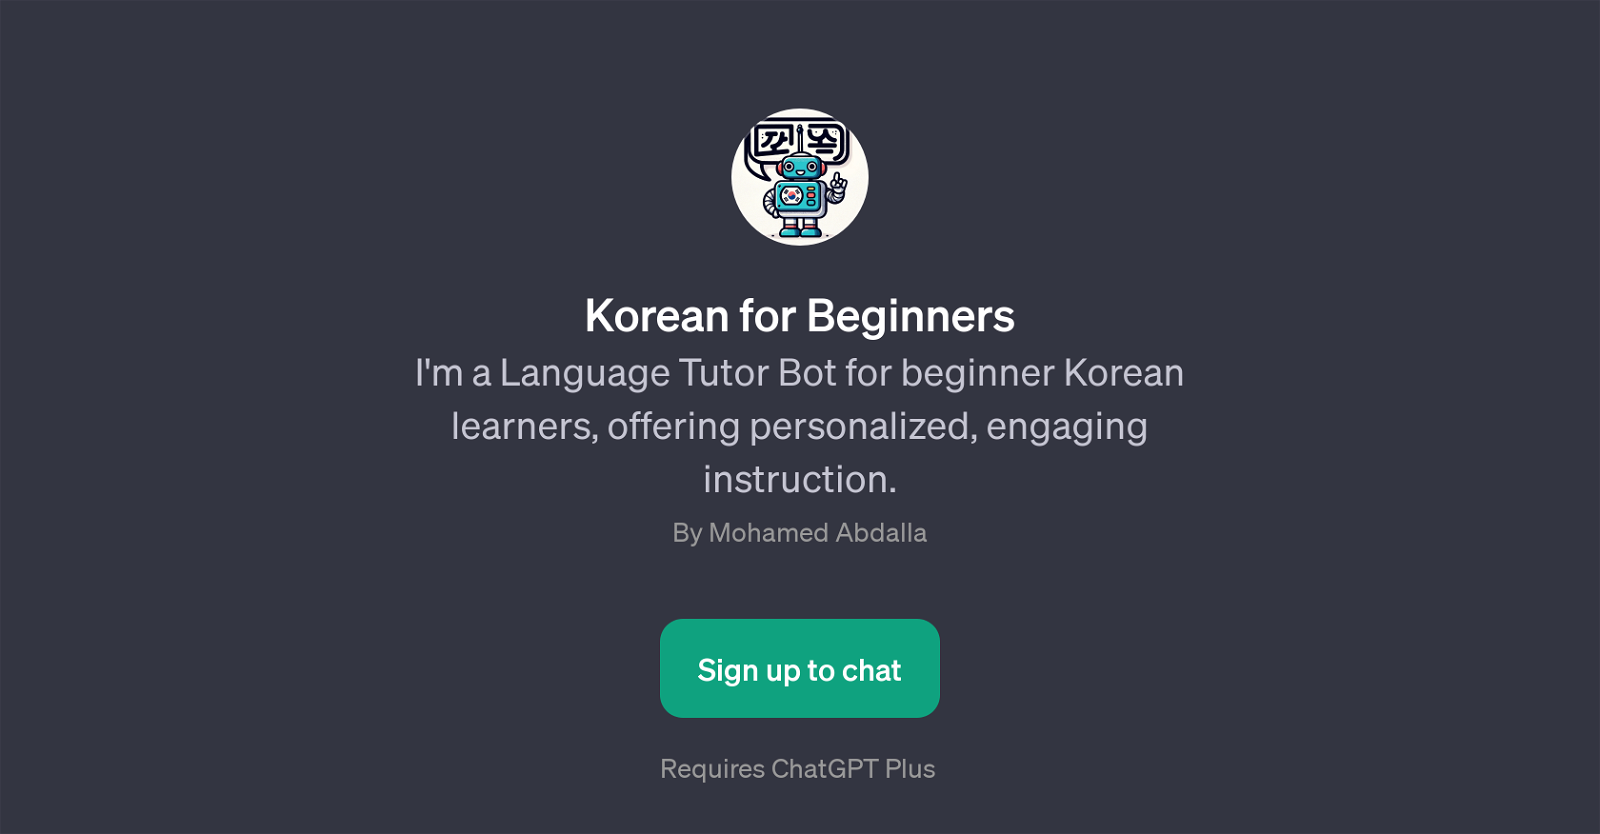 Korean for Beginners website